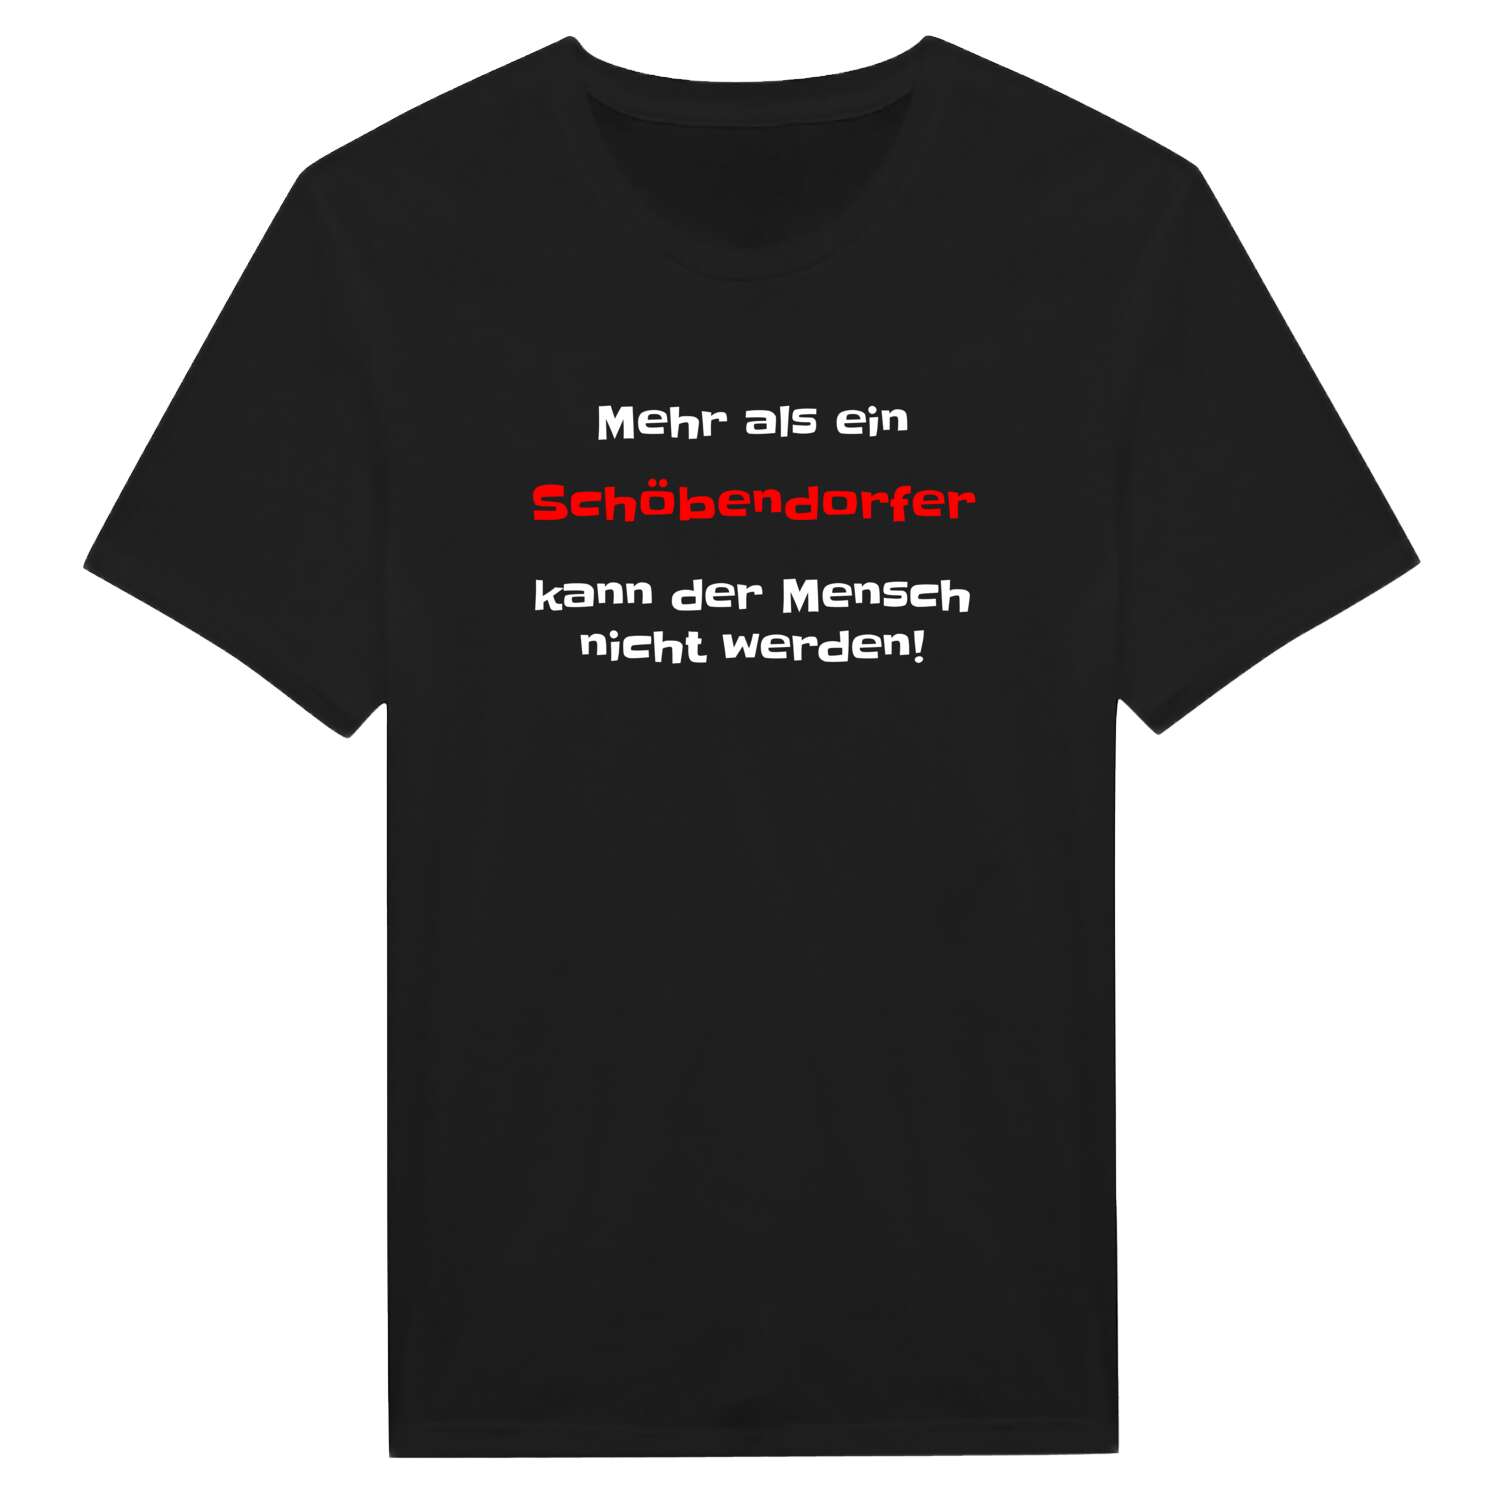 Schöbendorf T-Shirt »Mehr als ein«